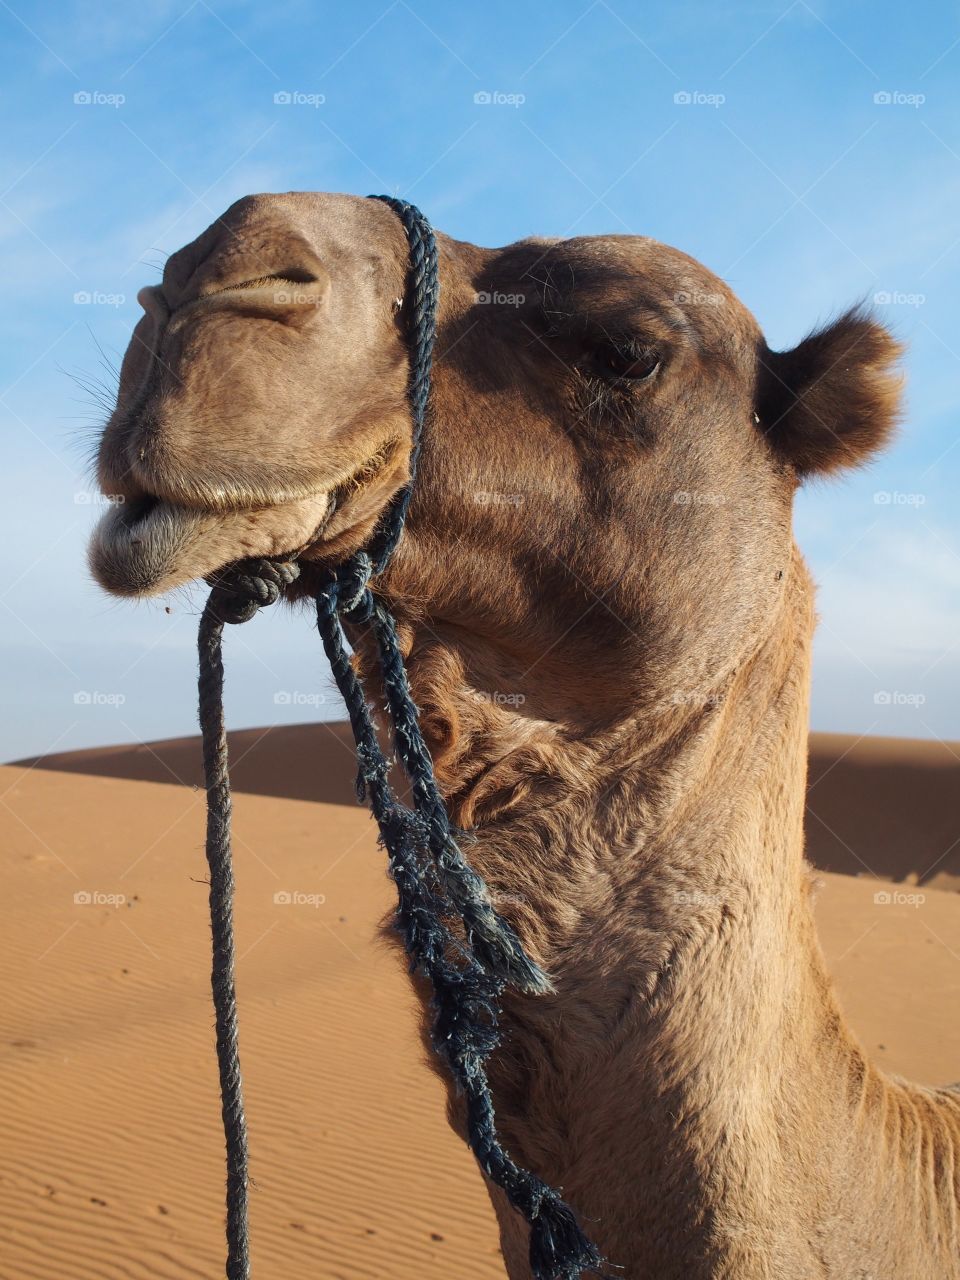 Camel in the Sahara desert 